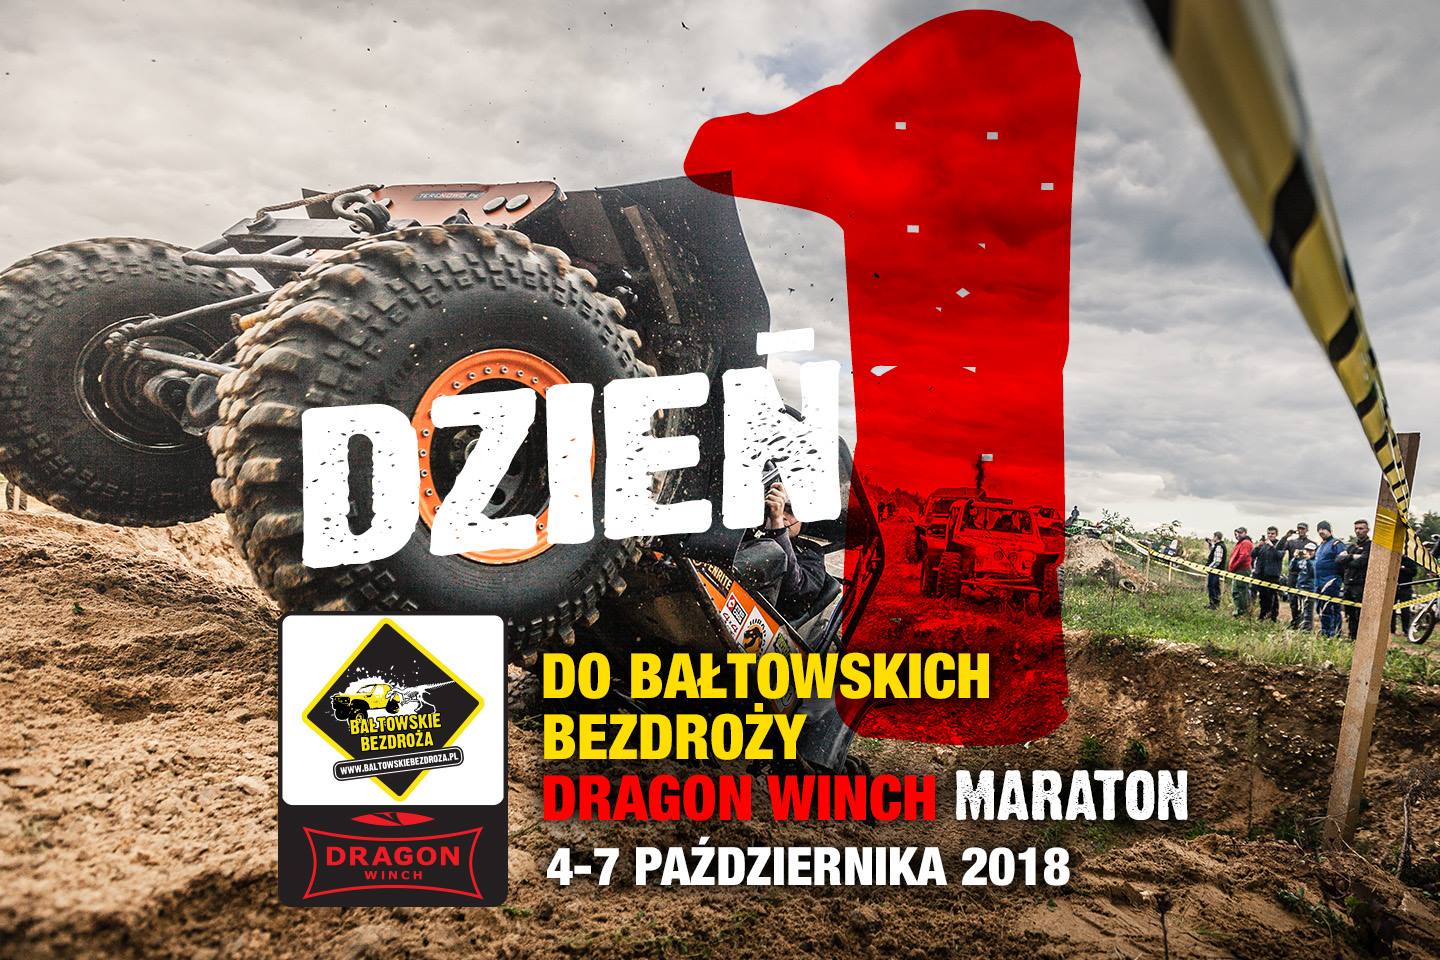 Już tylko 1 dzień do Maratonu Bałtowskich Bezdroży z DRAGON WINCH!